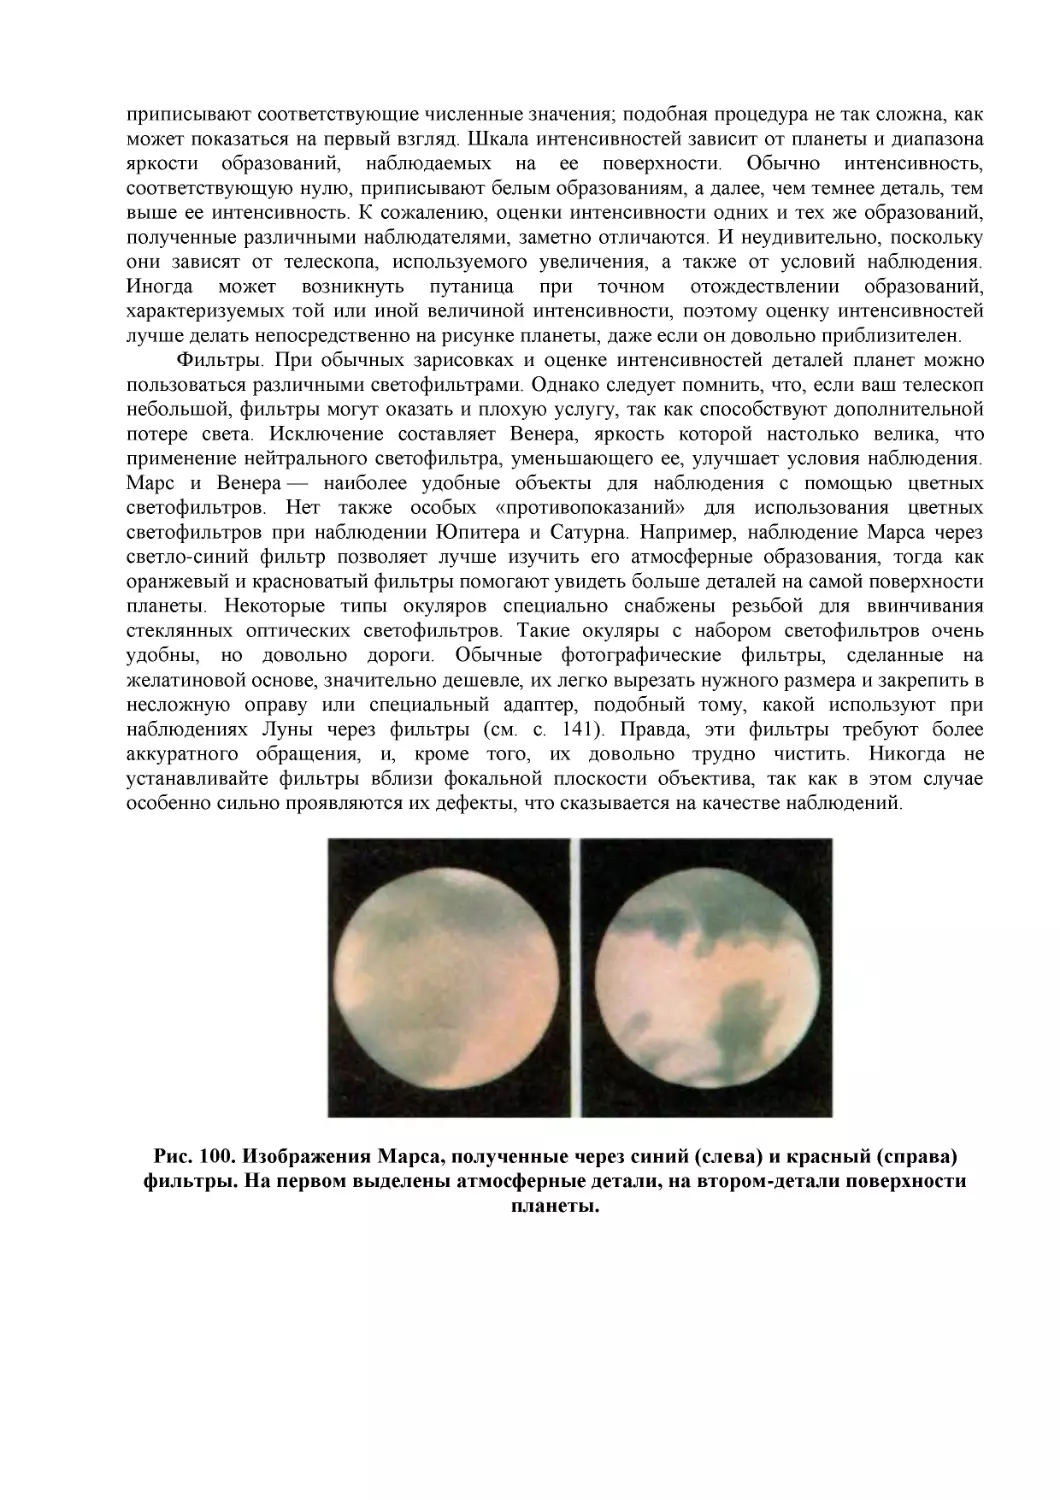 Рис. 100. Изображения Марса, полученные через синий (слева) и красный (справа) фильтры. На первом выделены атмосферные детали, на втором-детали поверхности планеты.